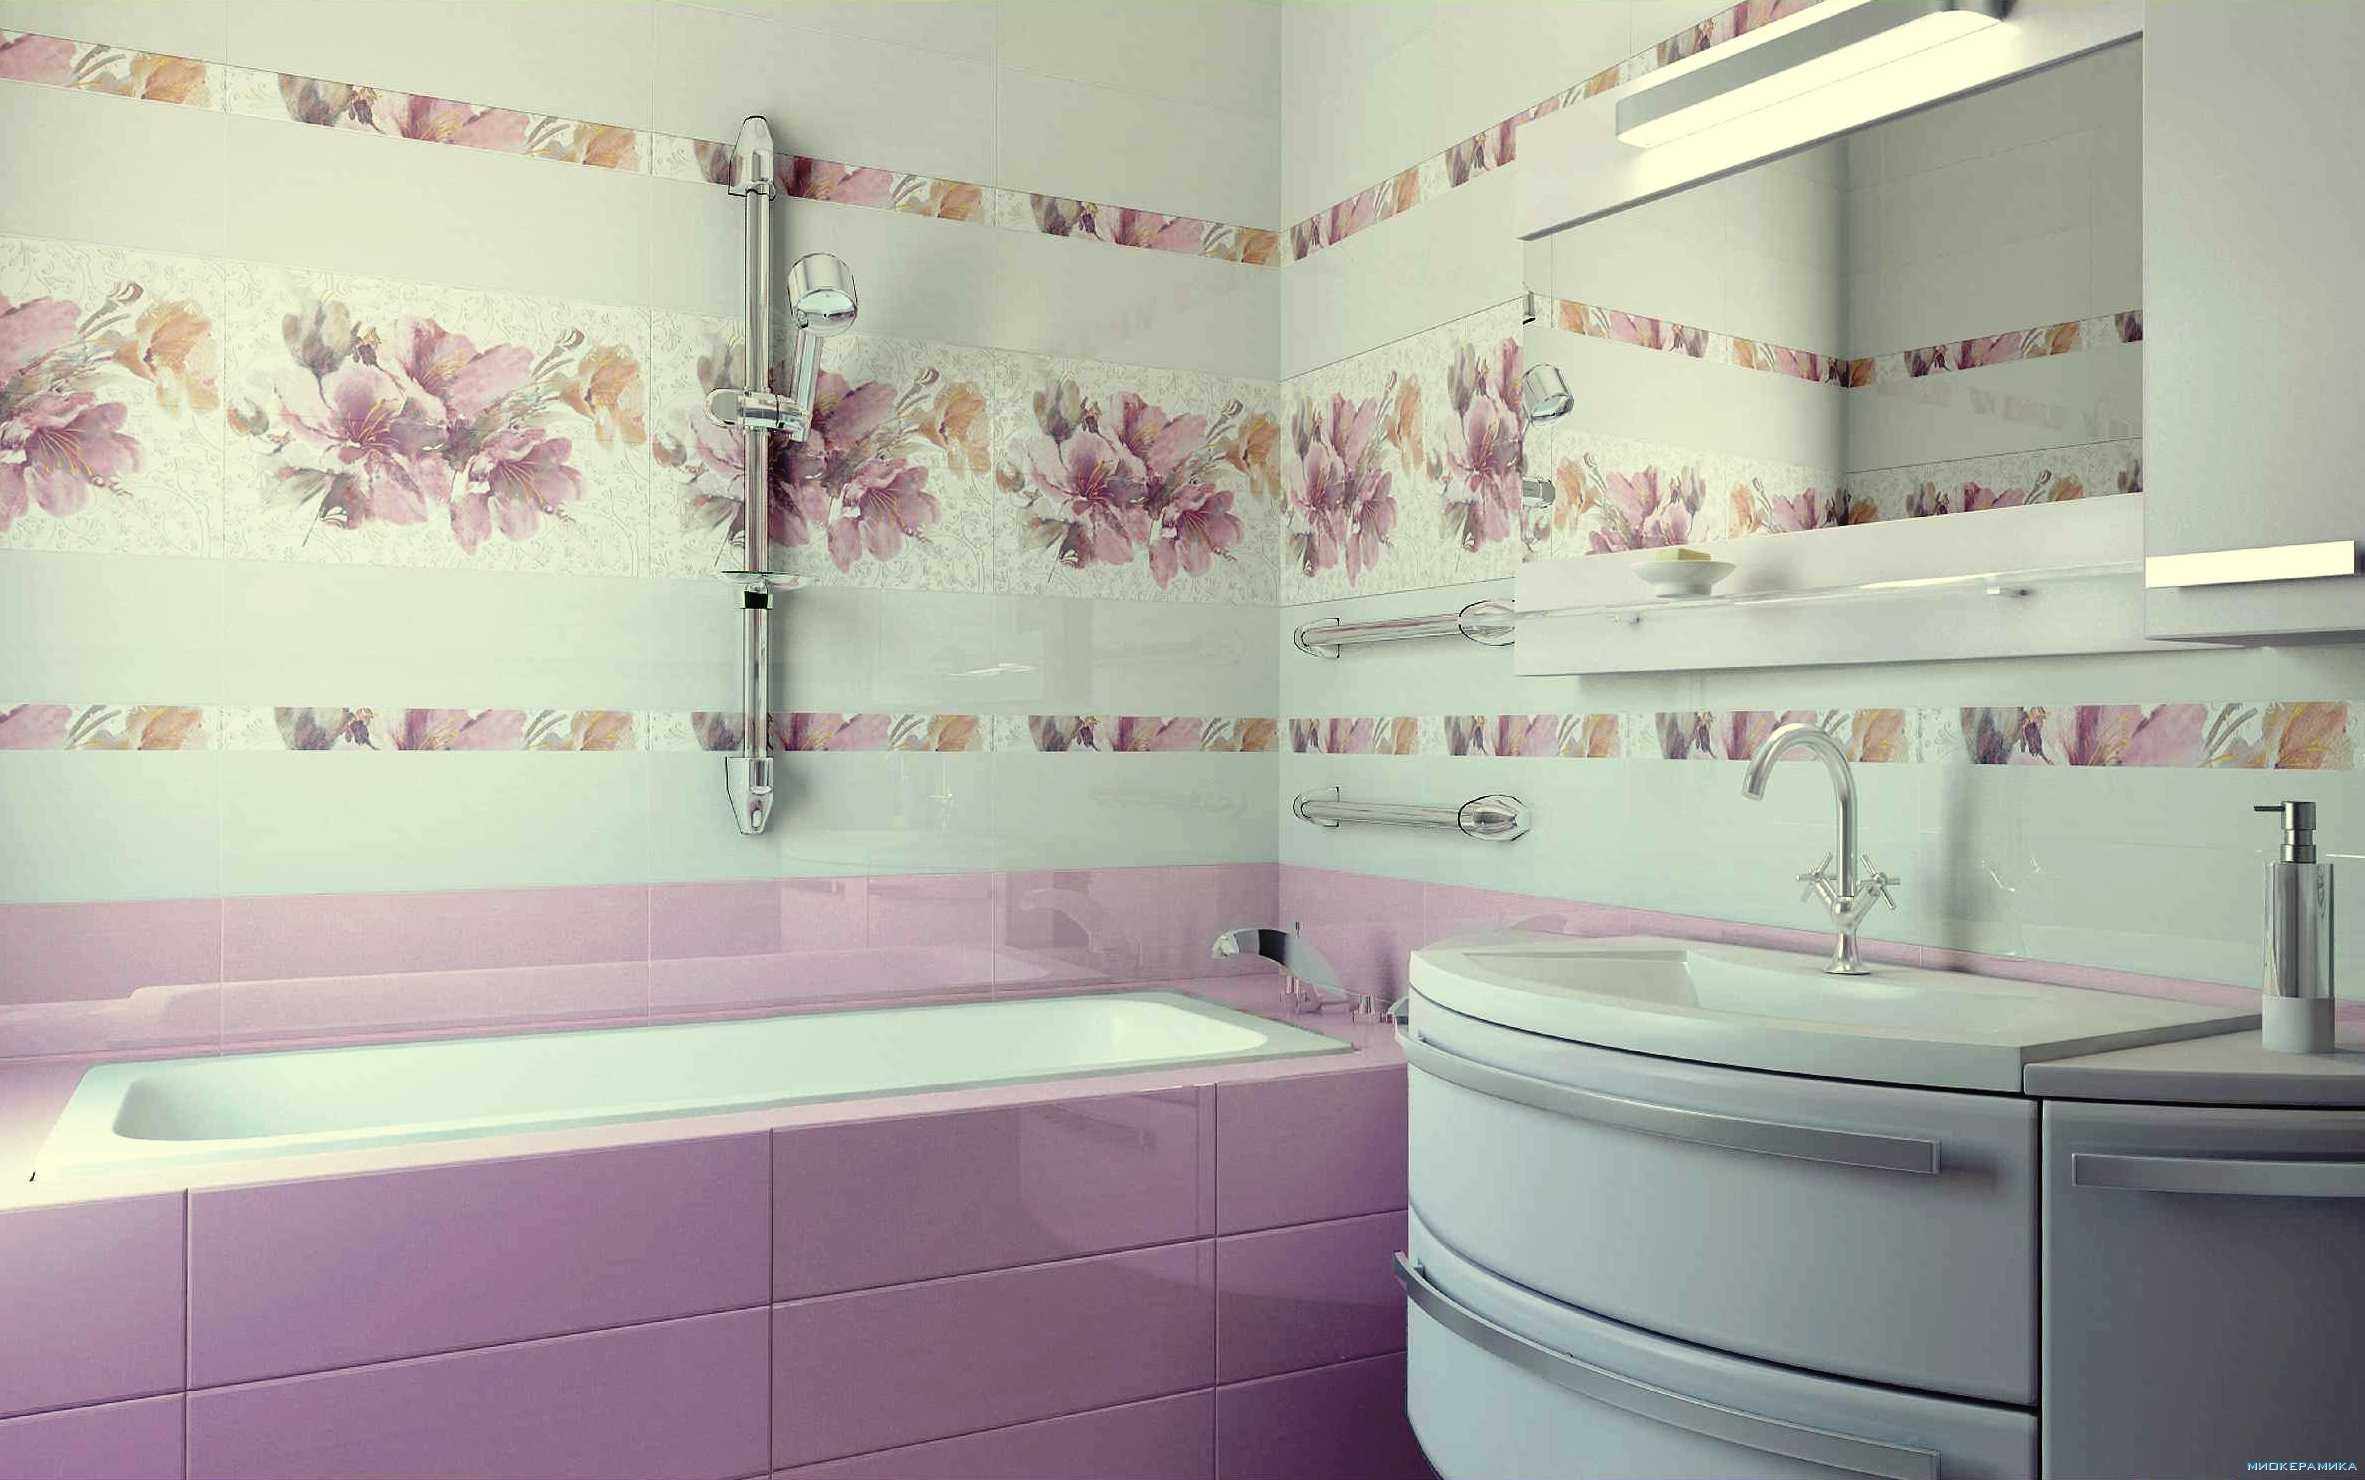 Un exemple d'un décor de salle de bain carrelé lumineux